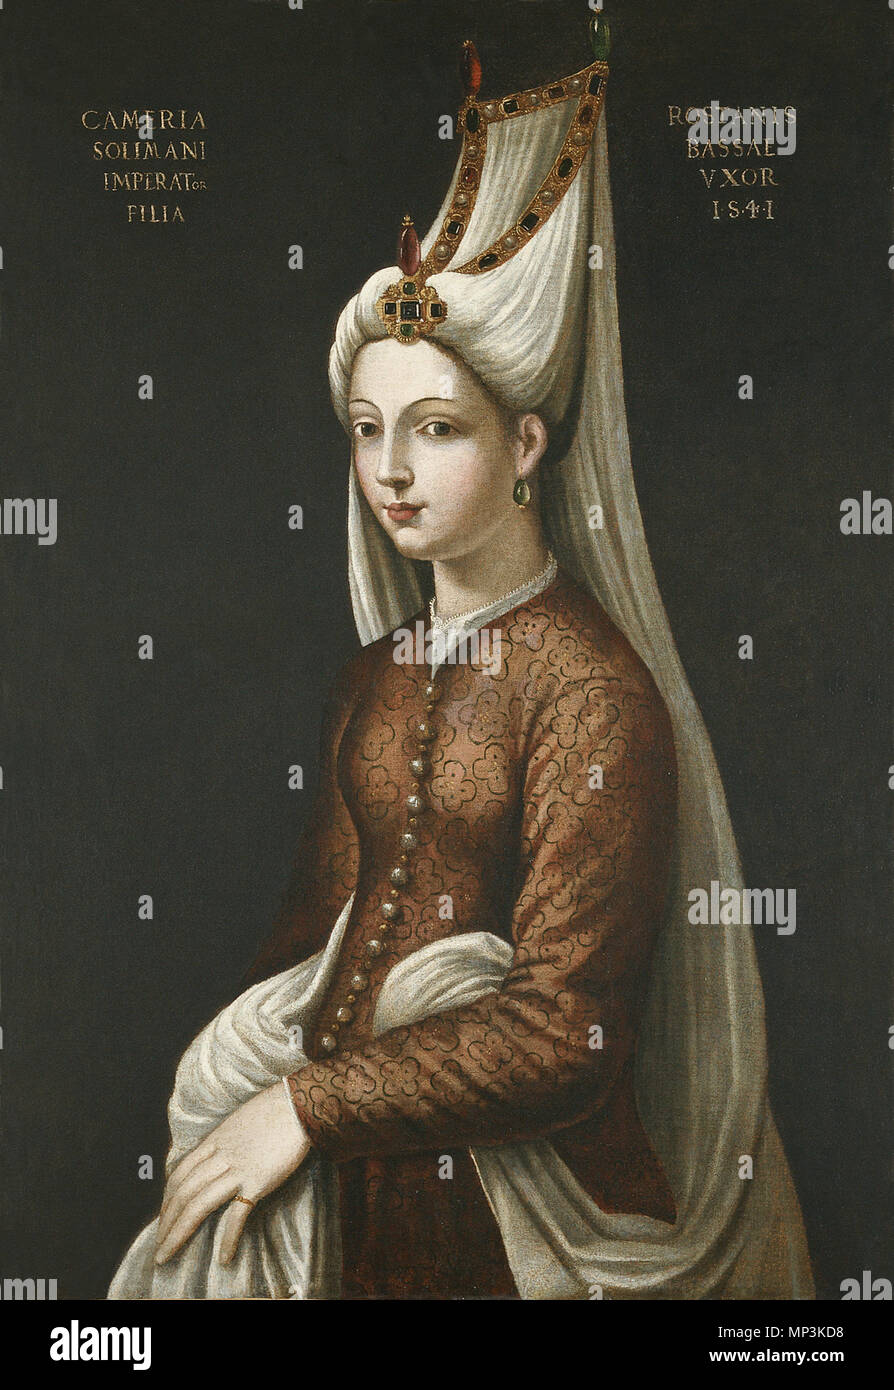 Portrait Of Cameria, Daughter of The Emperor Soliman, 1541After Cristofano dell Altissimo (1530-1605)Italian SchoolOil on canvas, 98.5 x 67.8 cm (38¾ x 26¾ in)Frame 117 x 87 x 8 cm (46 x 34¼ x 3¼ in)Inv. No. 102 Portrait Of Cameria, Daughter of The Emperor Soliman, 1541 1291 İmparator Süleyman’ın Kızı Cameria (Mihrimah Sultan) Stock Photo